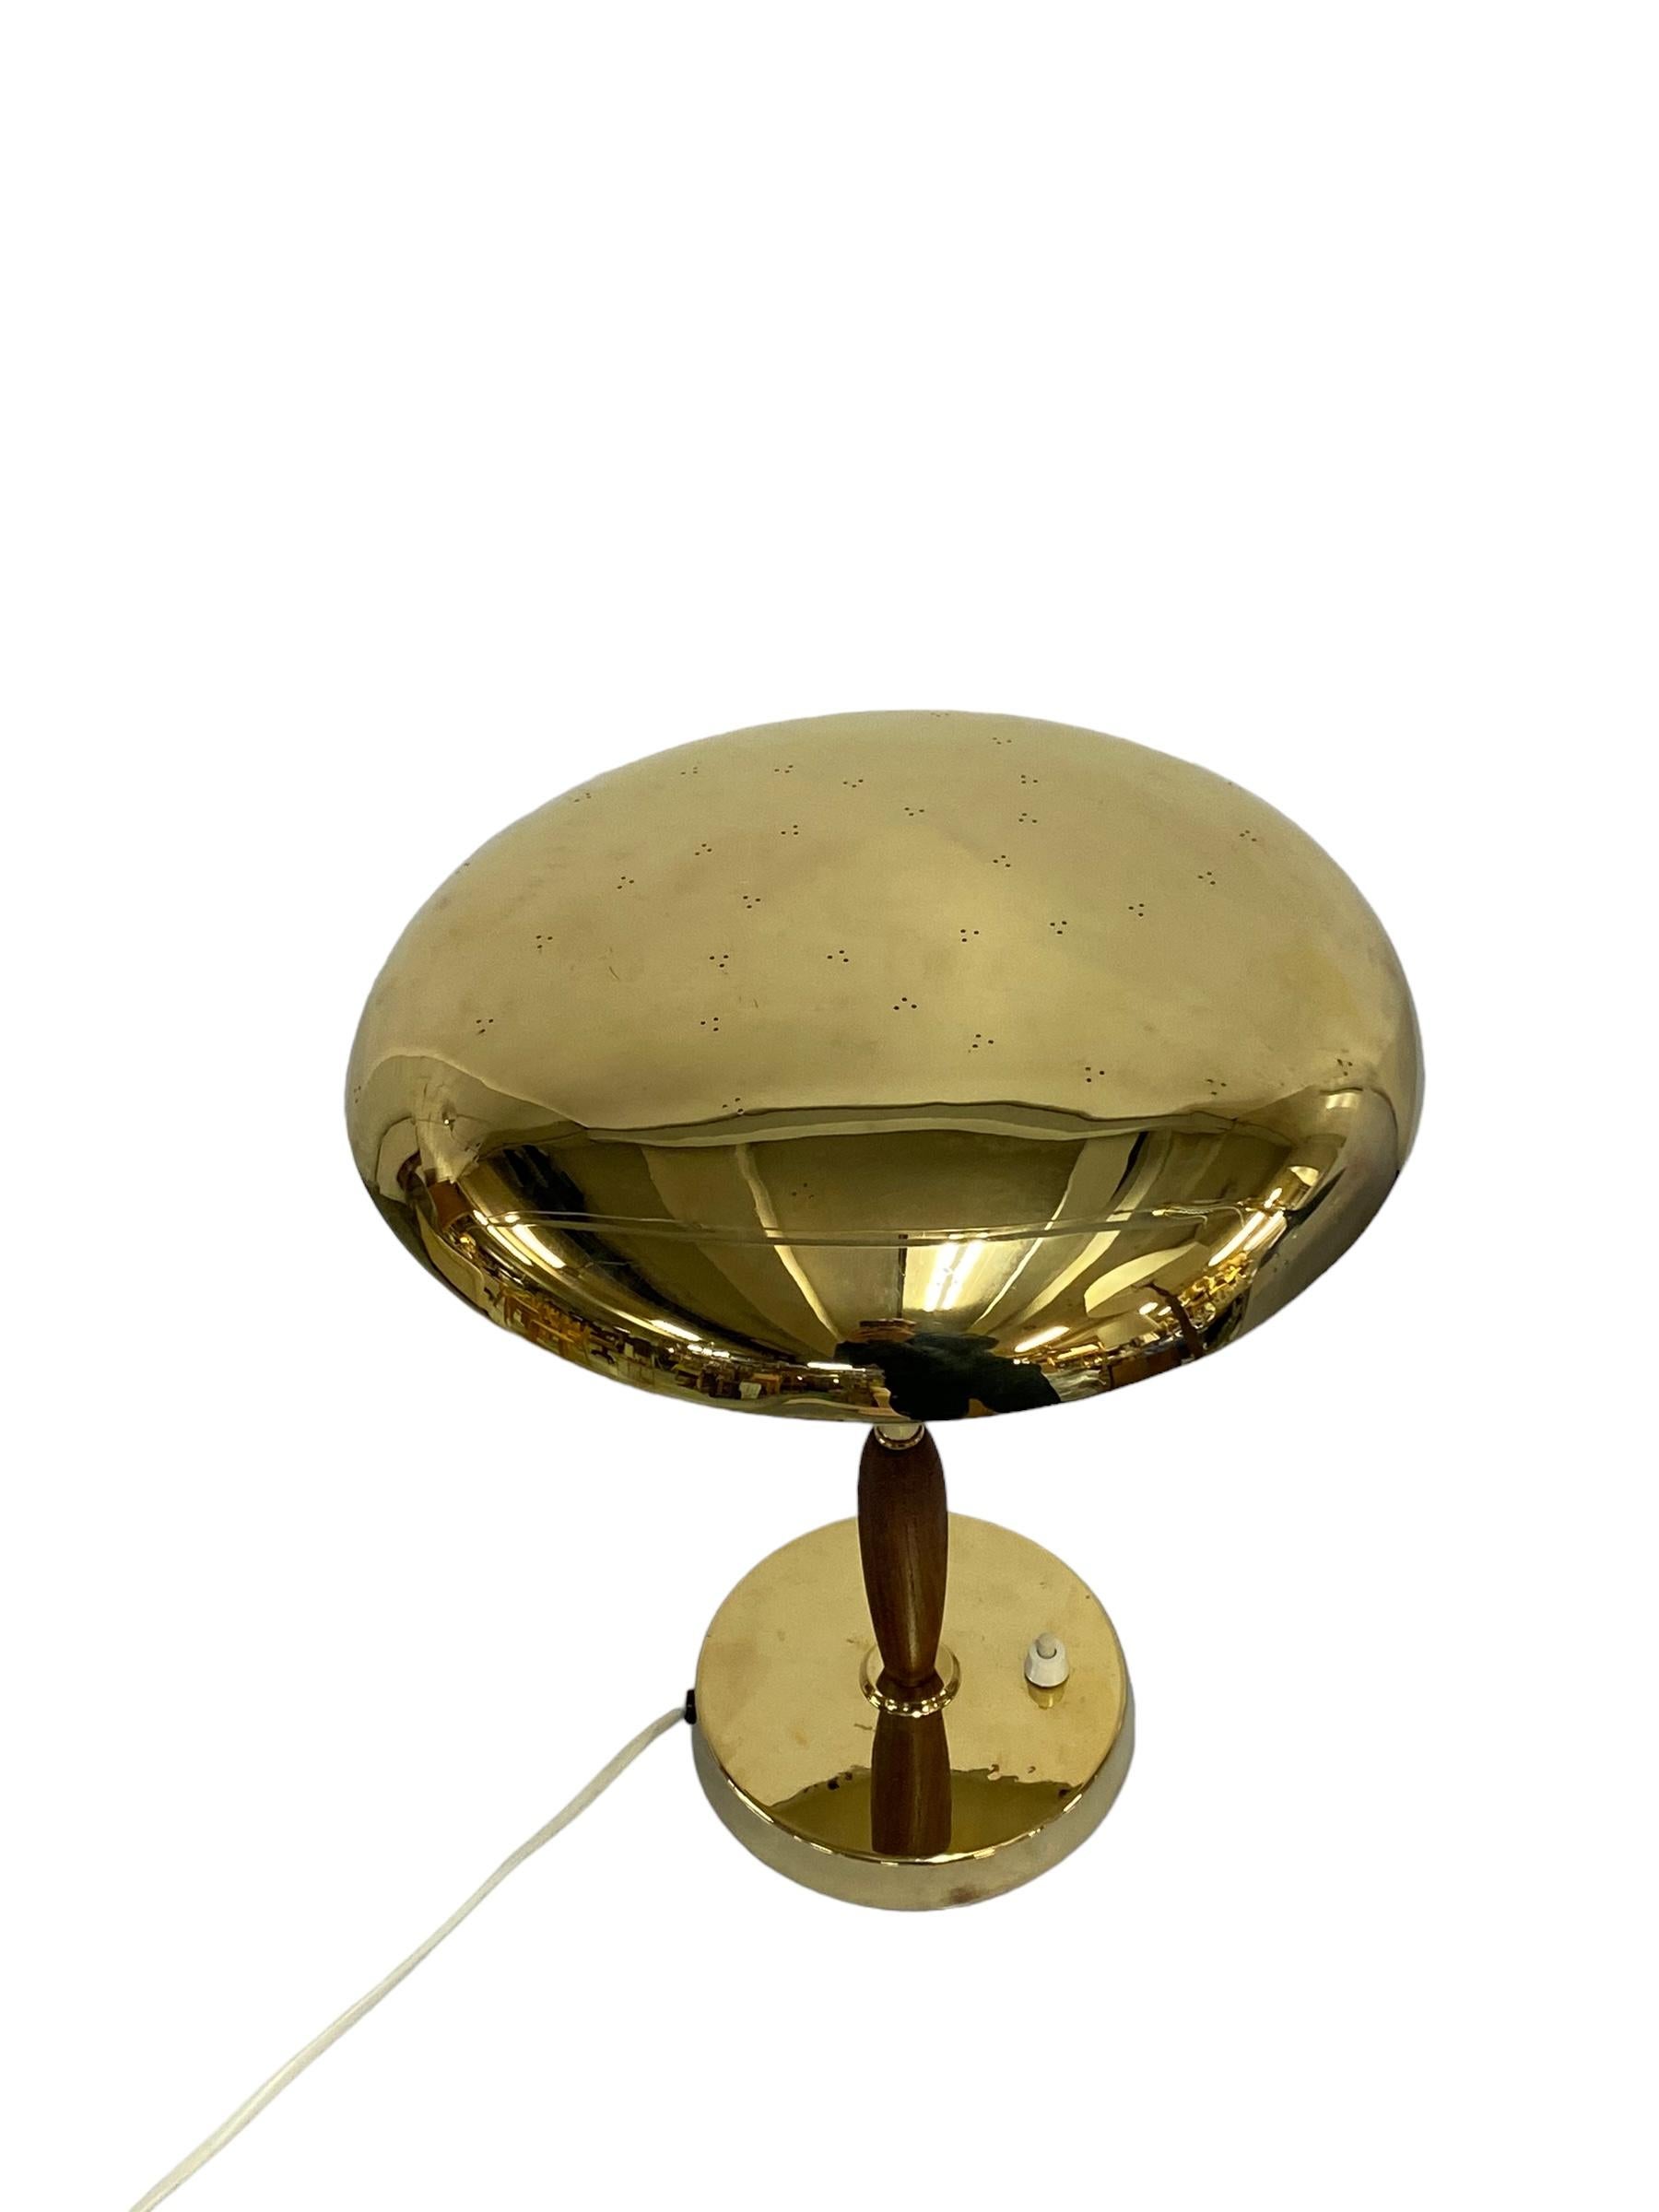 Finnish Table Lamp Model. 407024, Pohjoismainen Sähkö Oy 1950s For Sale